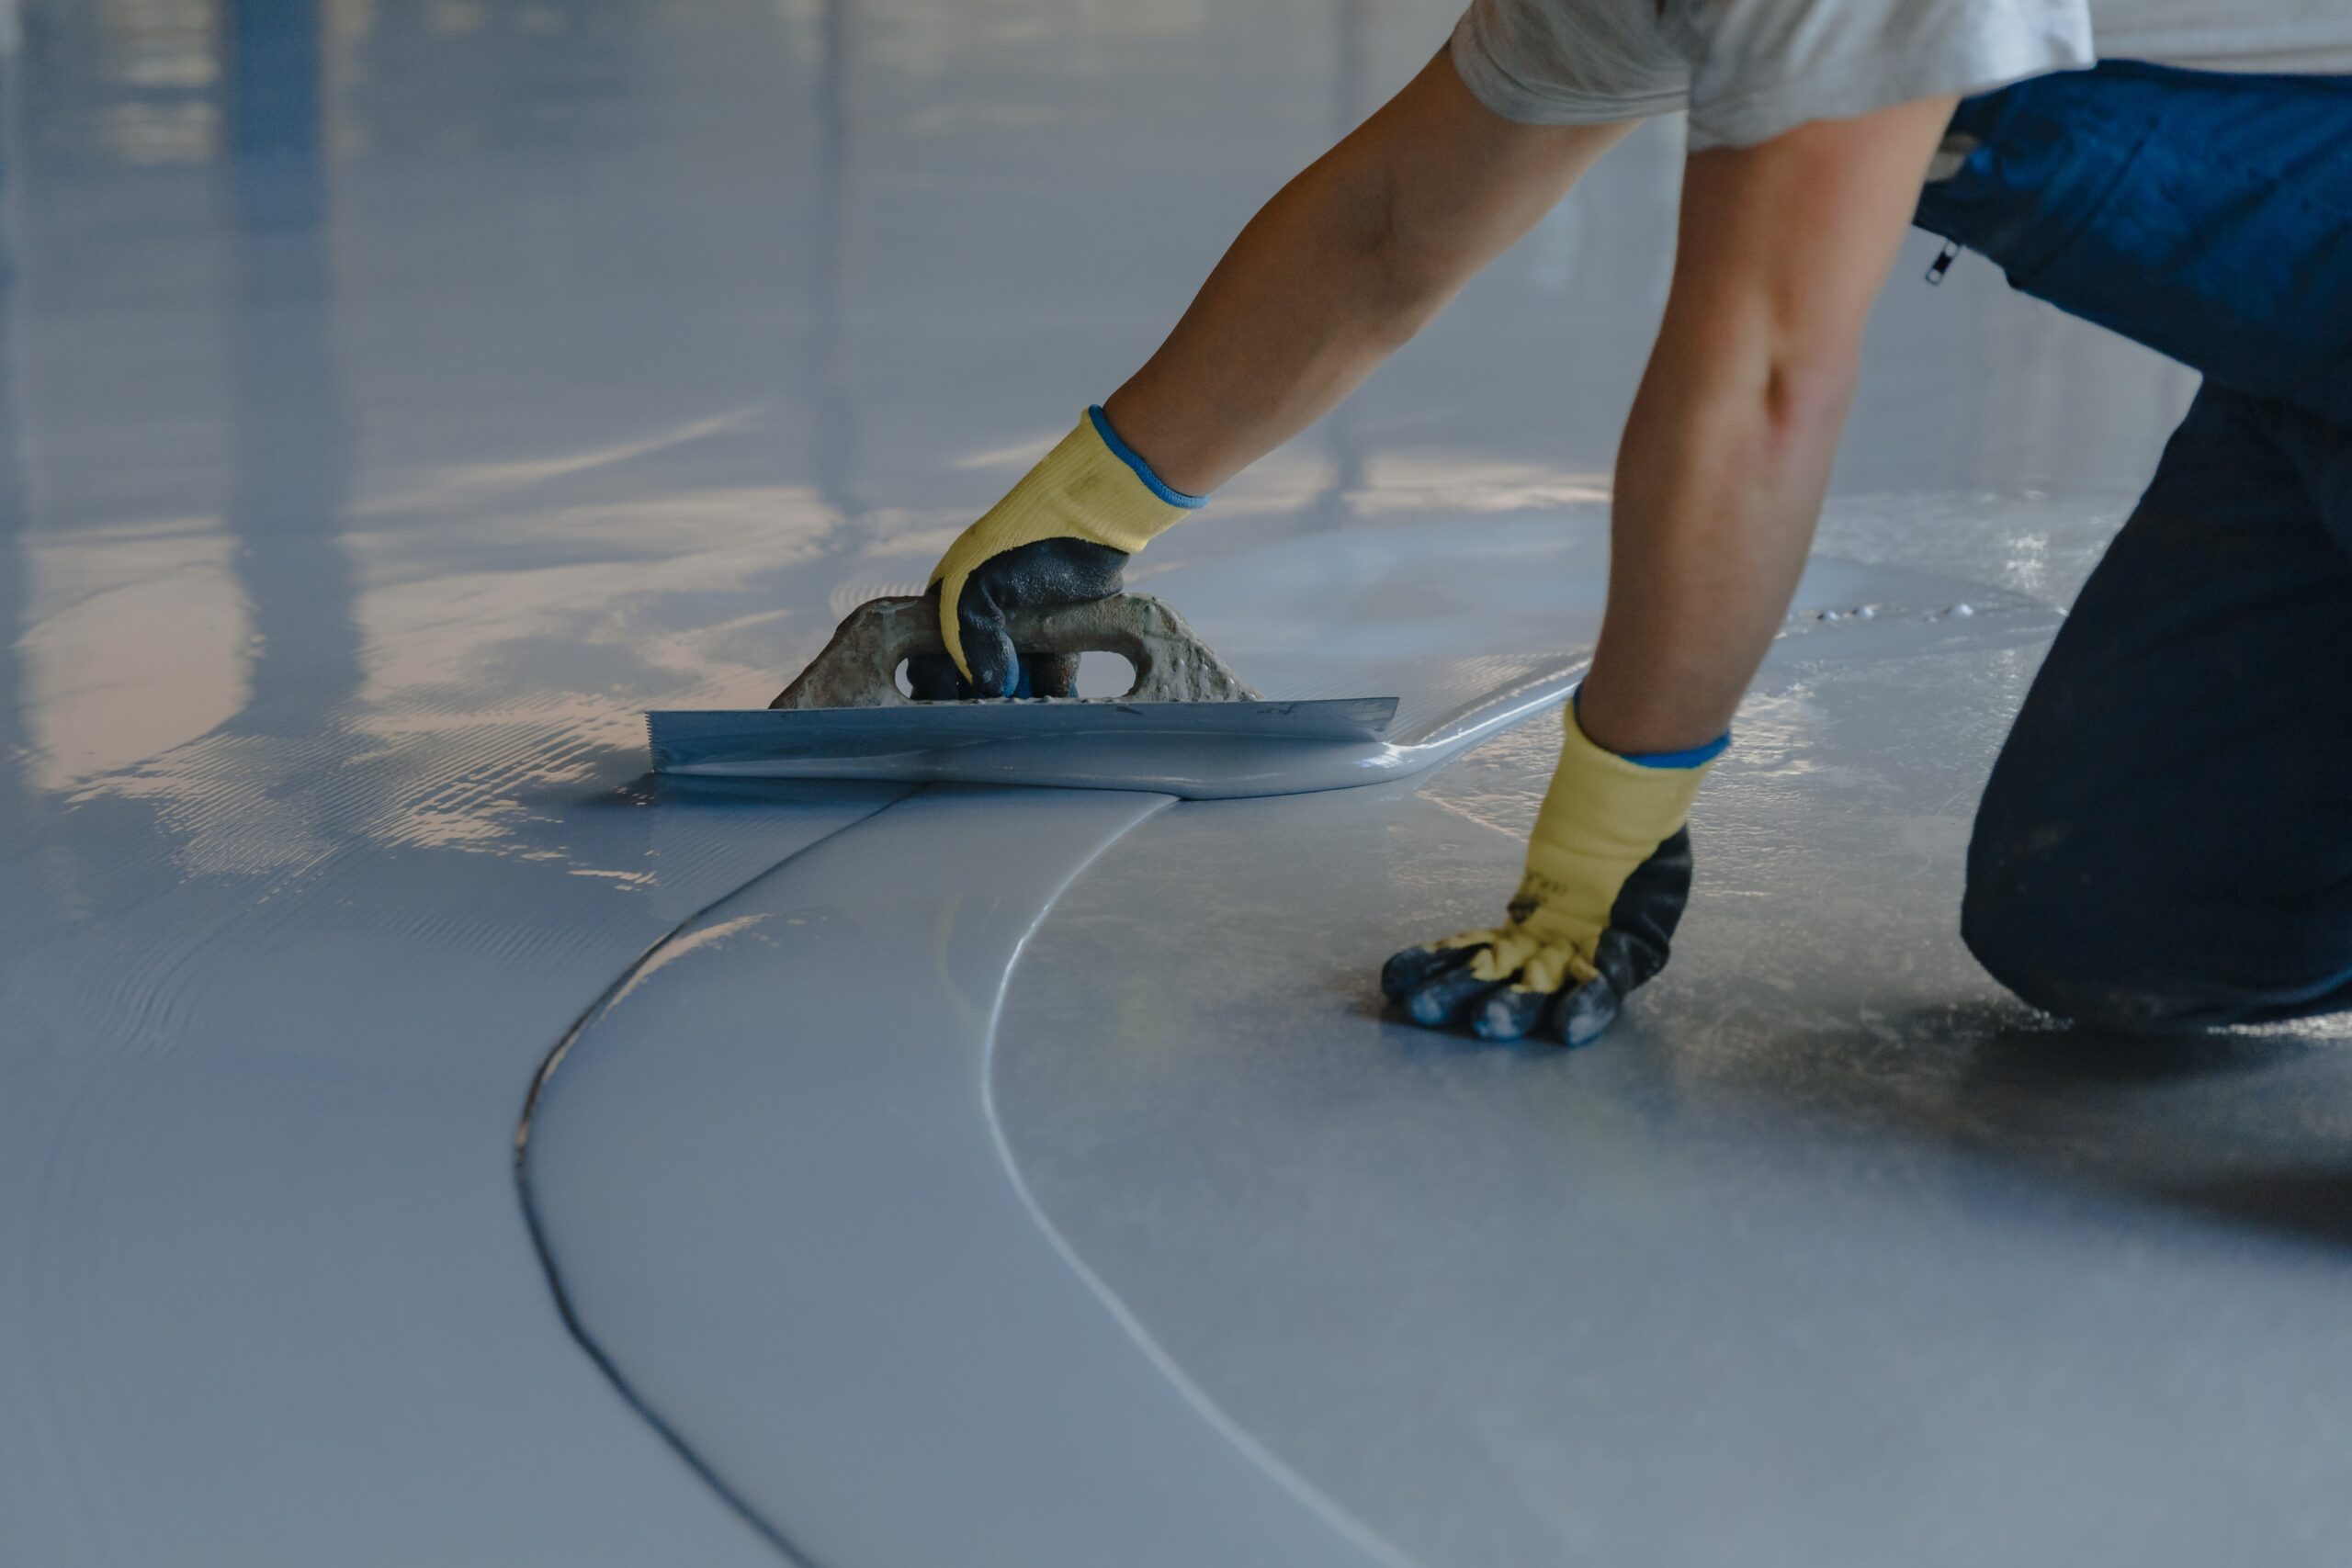 flooring tech applying epoxy coating